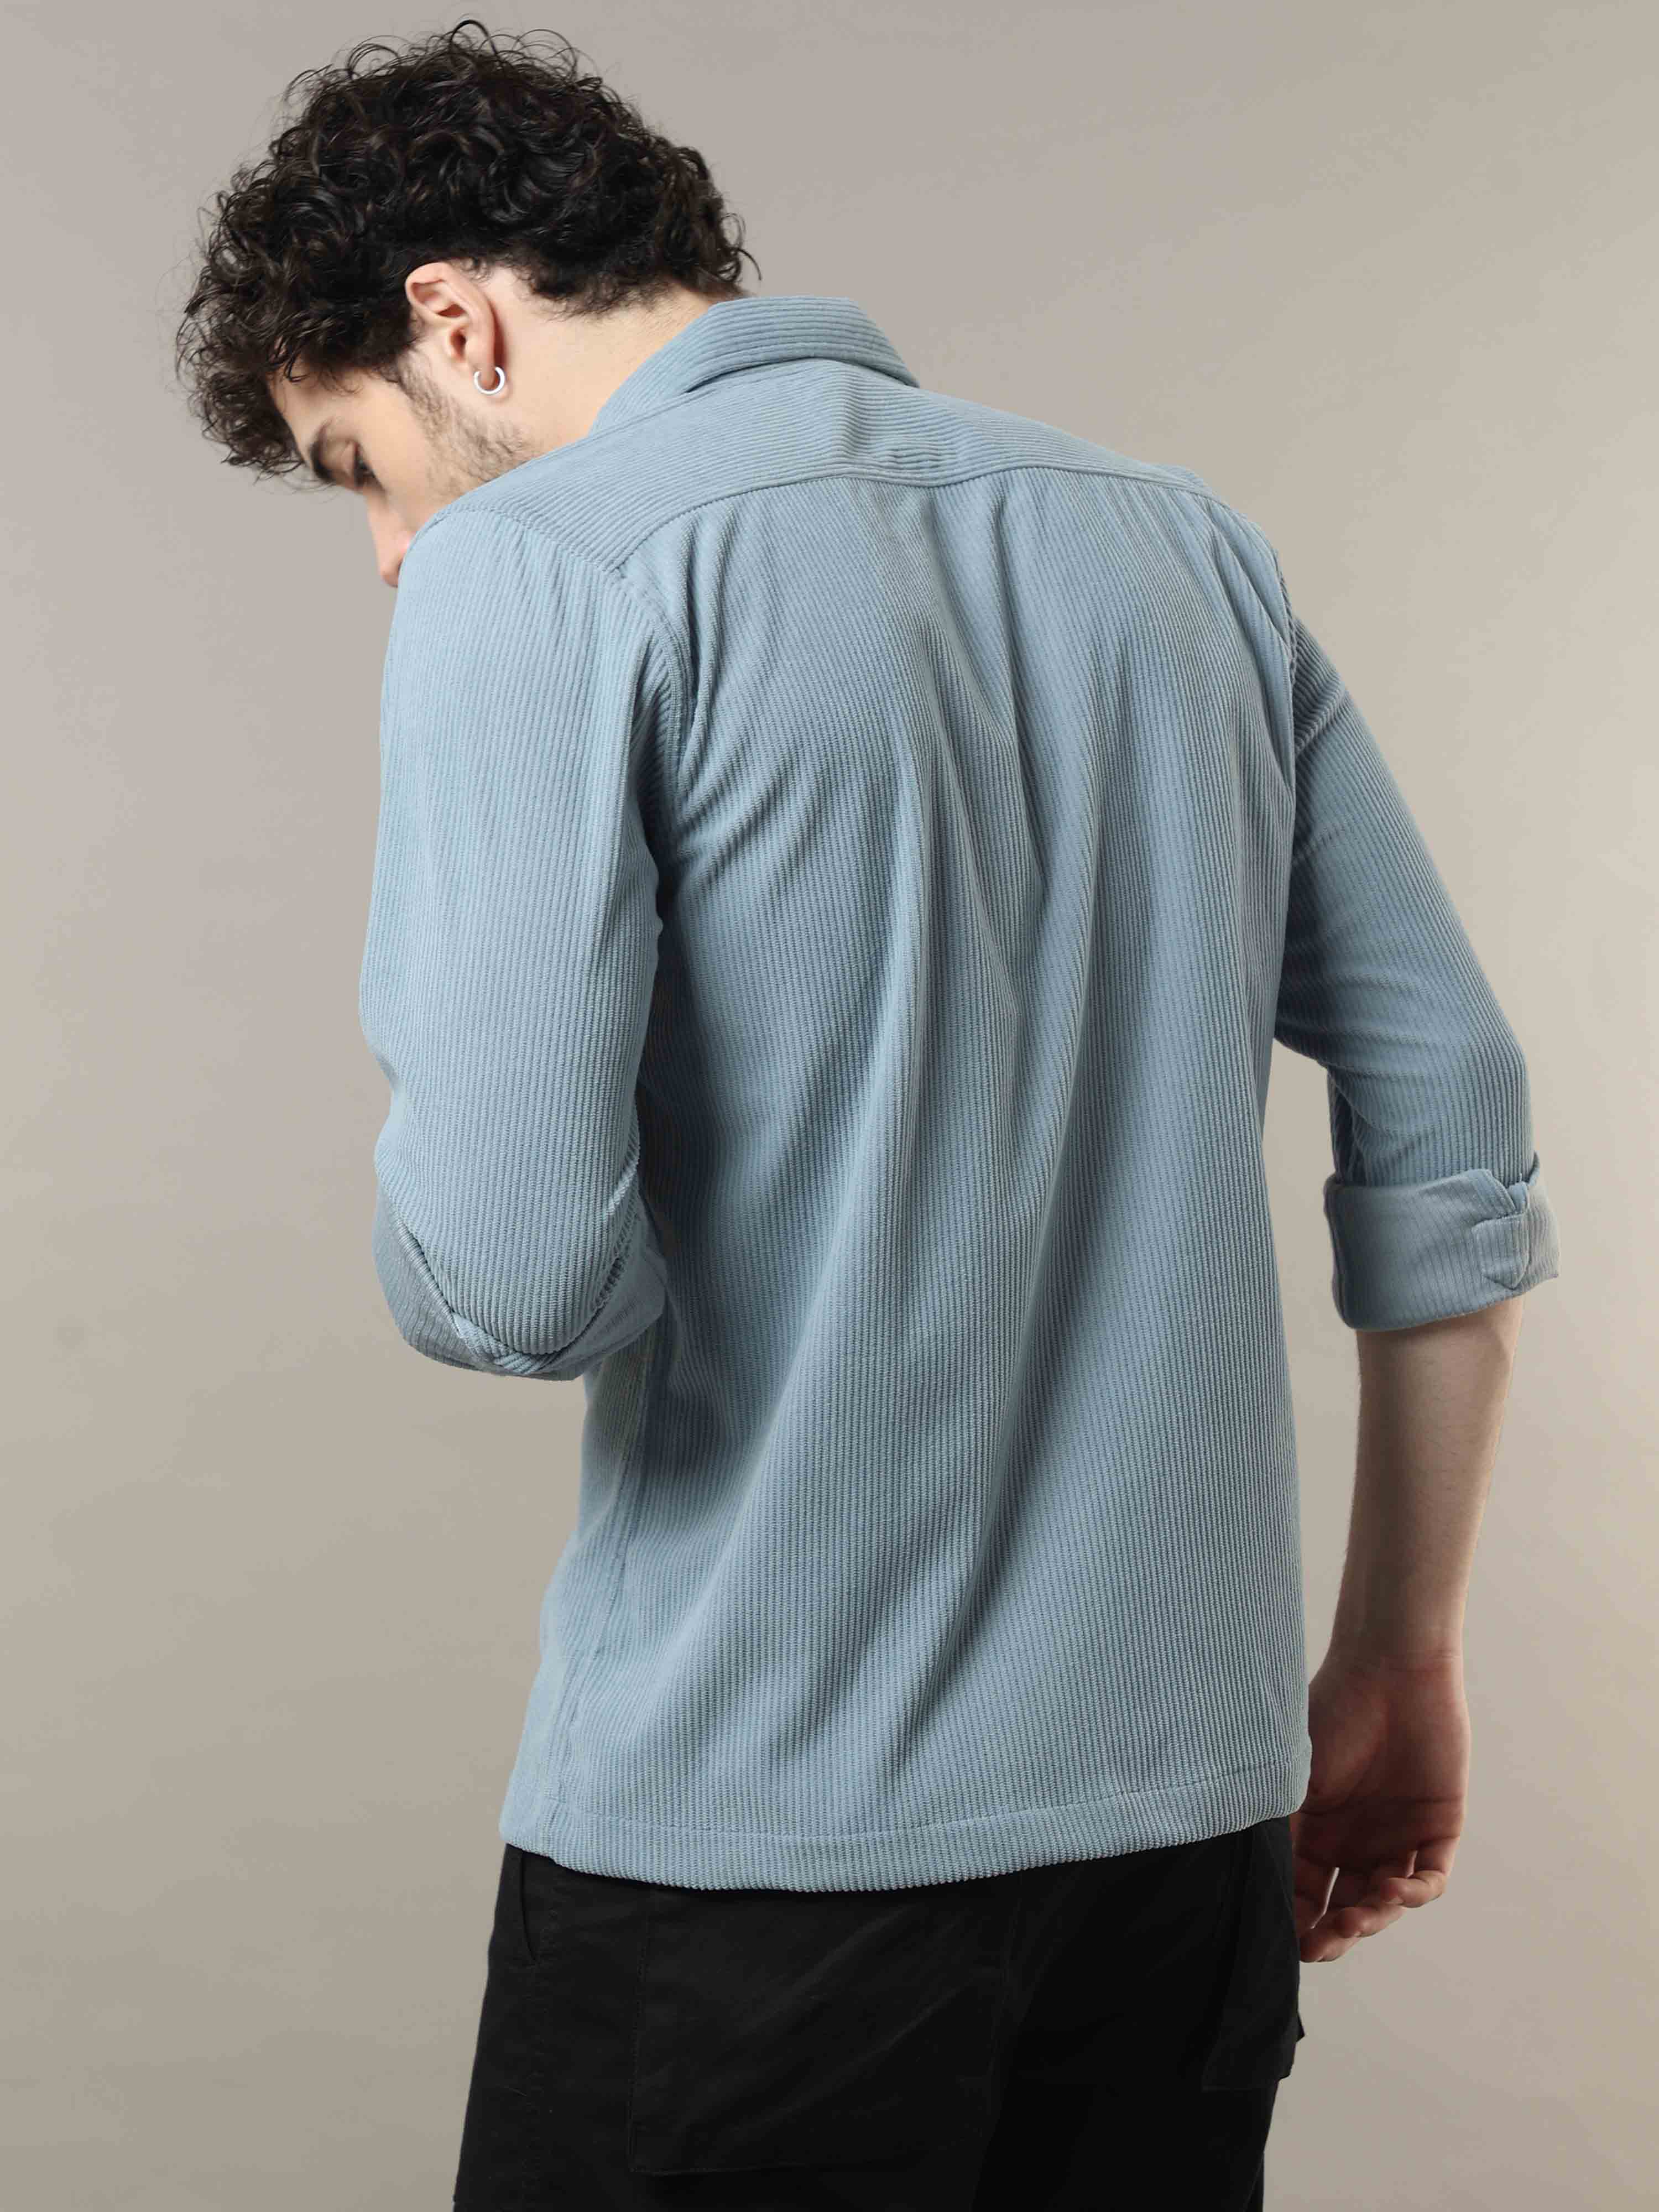 Verdigris Blue Corduroy Double Pocket with Contrast Patch Shirt 